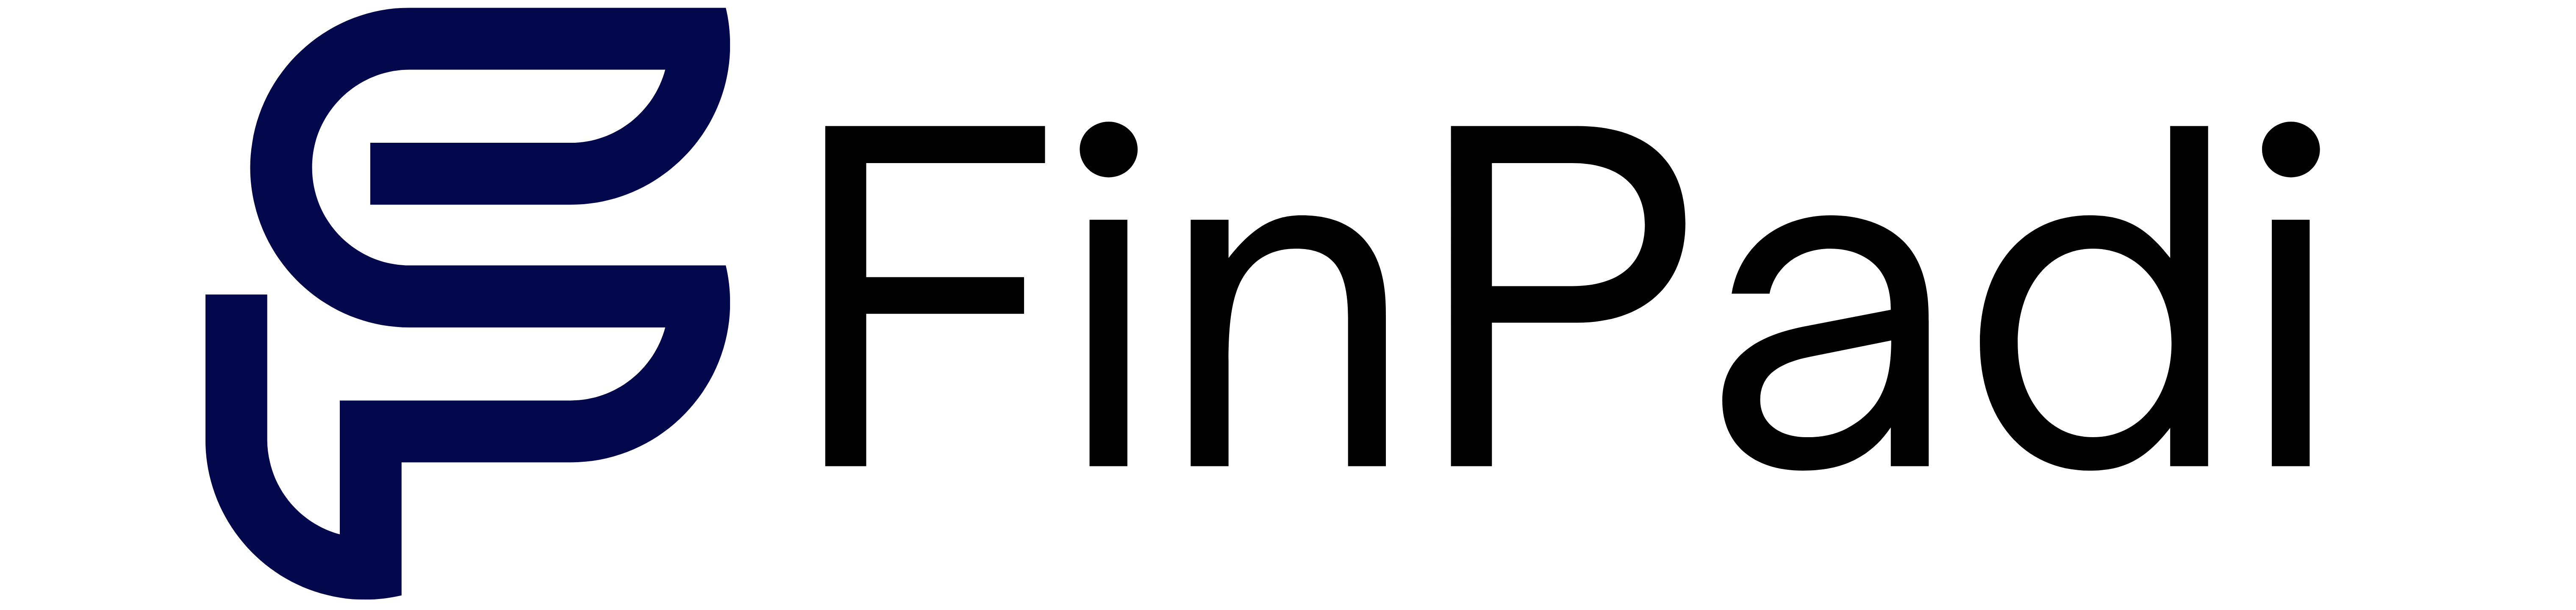 Finpadi Logo.png